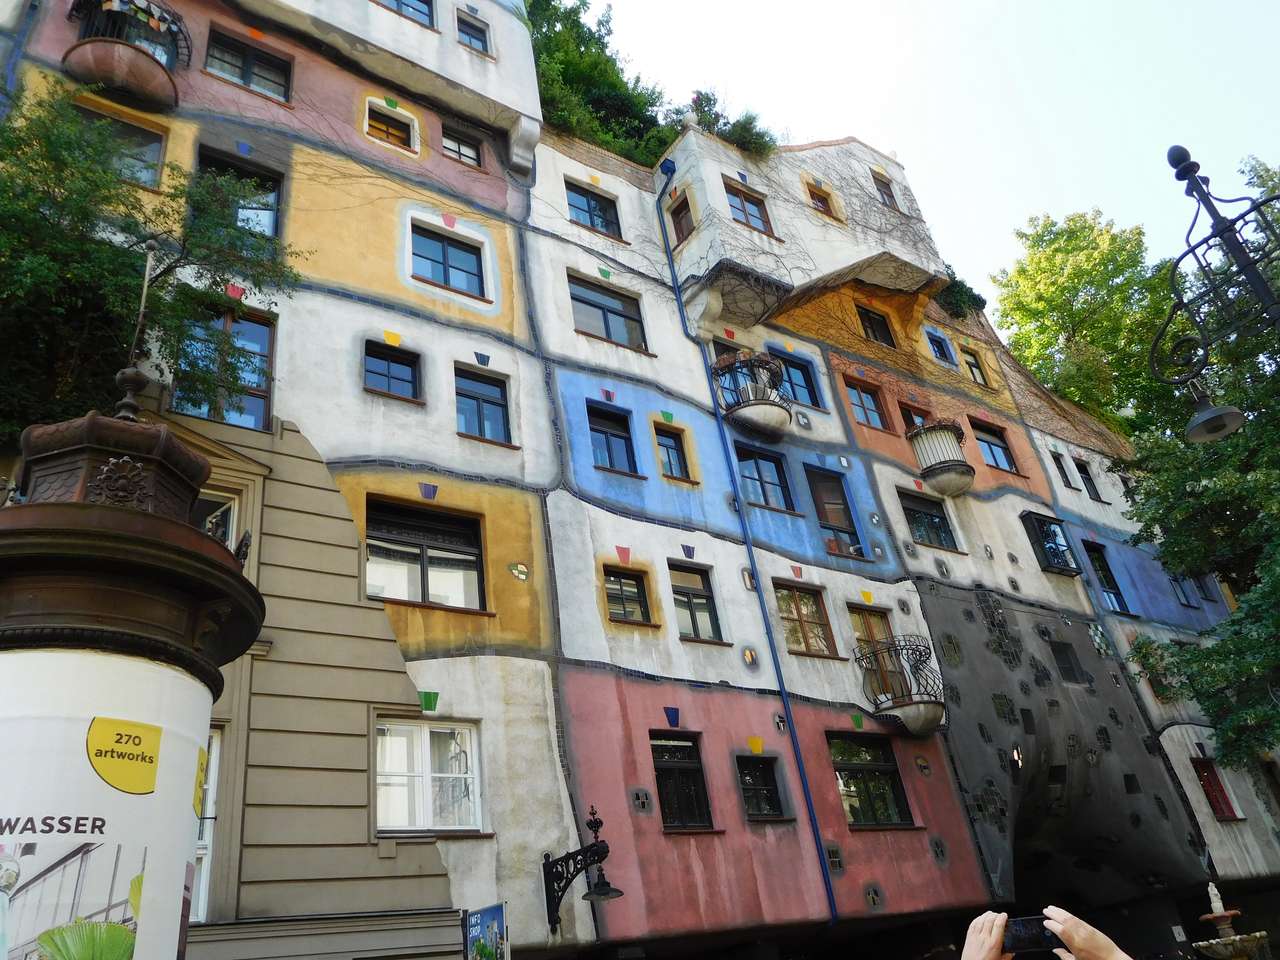 Hundertwasserhaus in Vienna puzzle online from photo